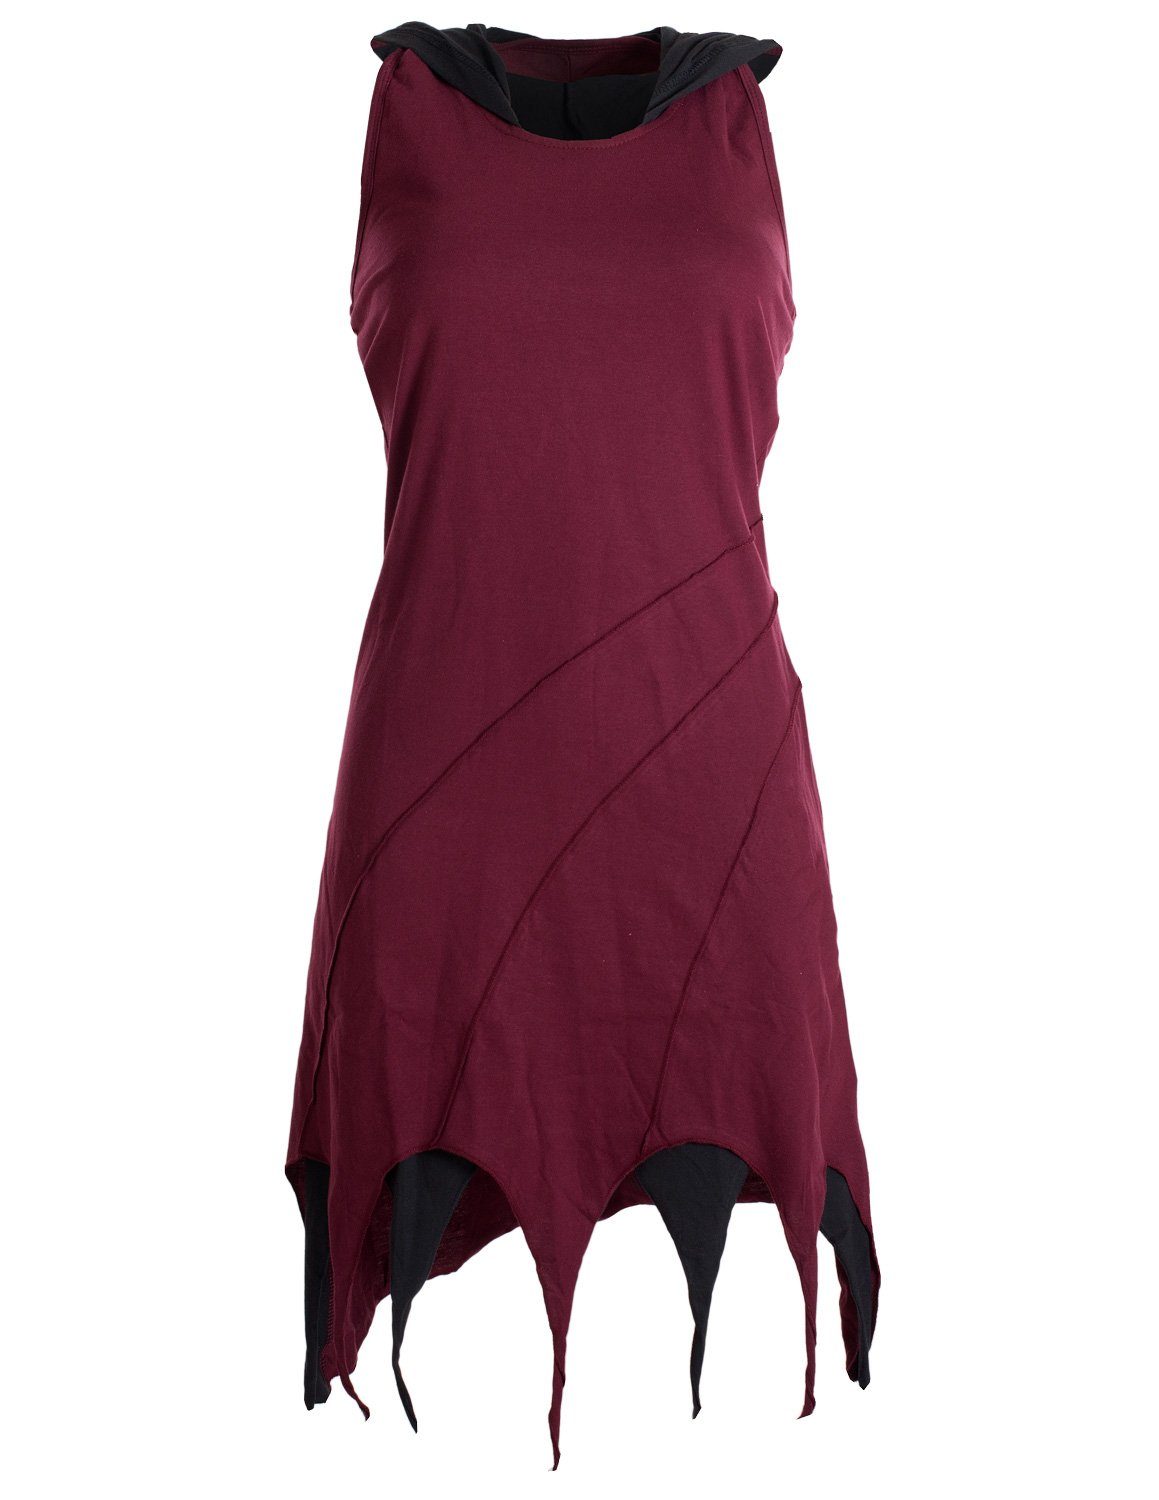 Kleid Hippie, Elfen Goa, Lagenlook dunkelrot Vishes Baumwolle Zipfel-Neckholder Neckholderkleid Kapuzen aus